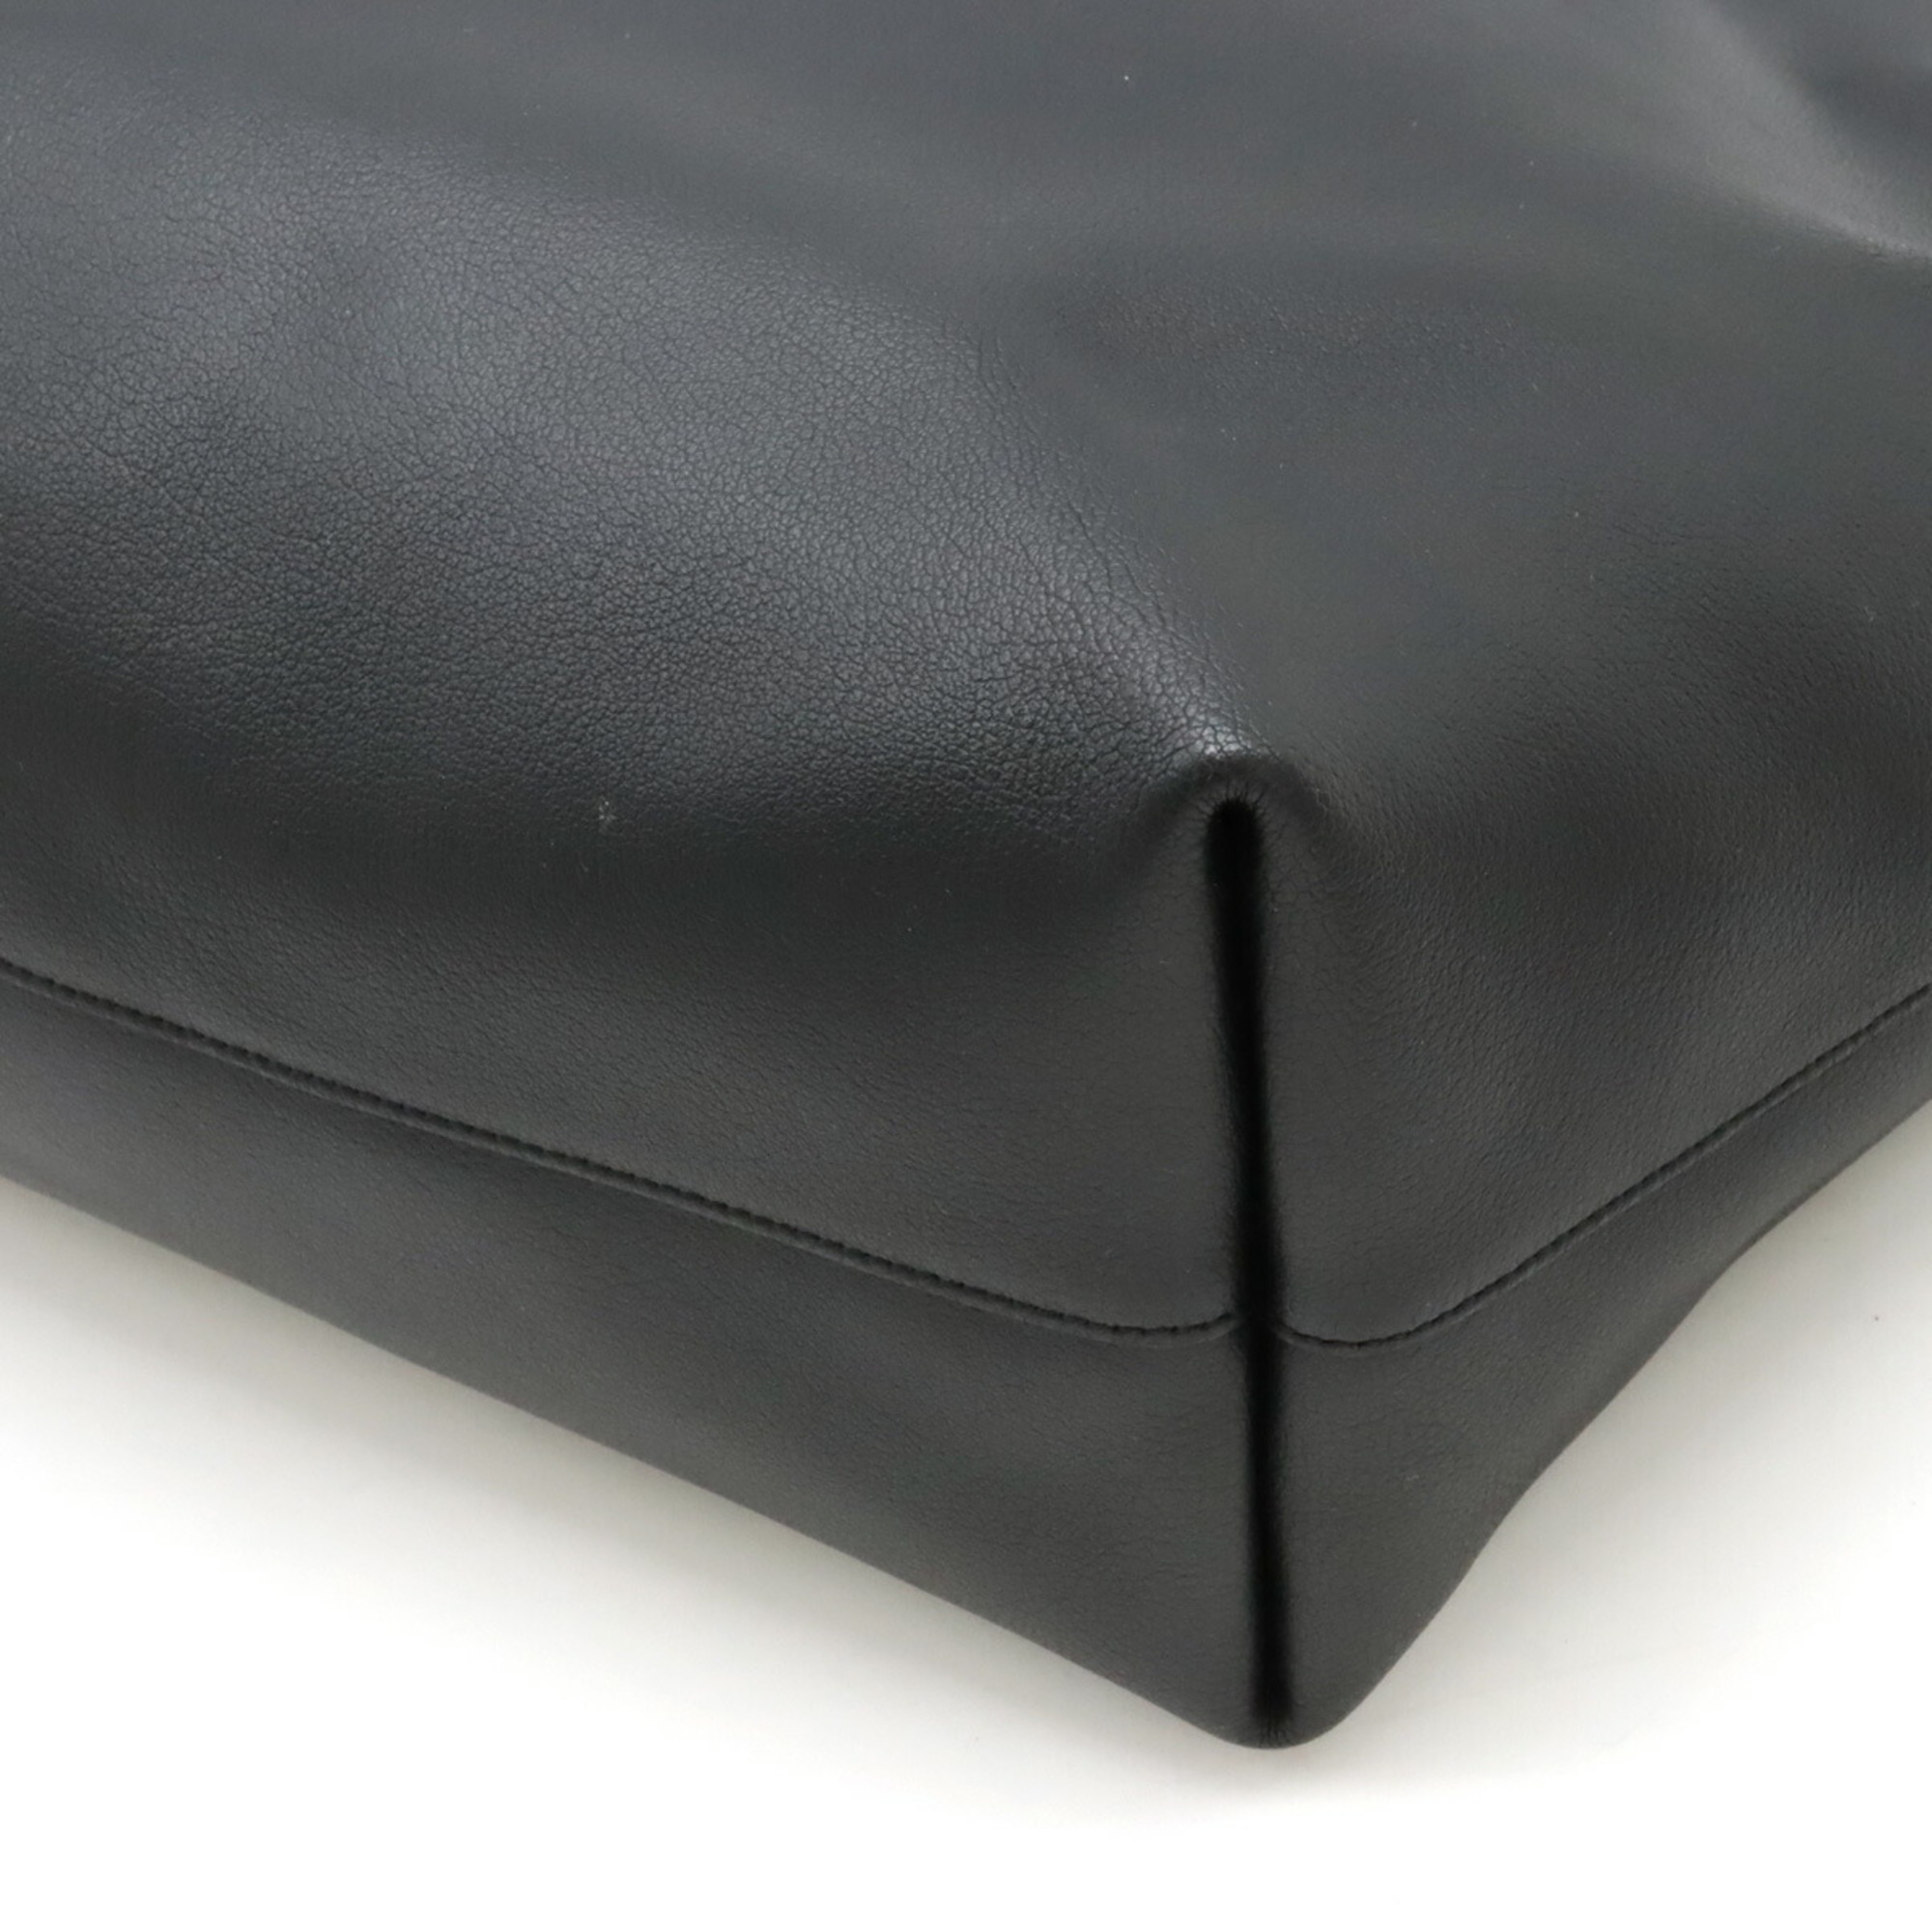 Yves Saint Laurent SAINT LAURENT PARIS YSL Saint Laurent Tote Bag Large Leather Black 394195